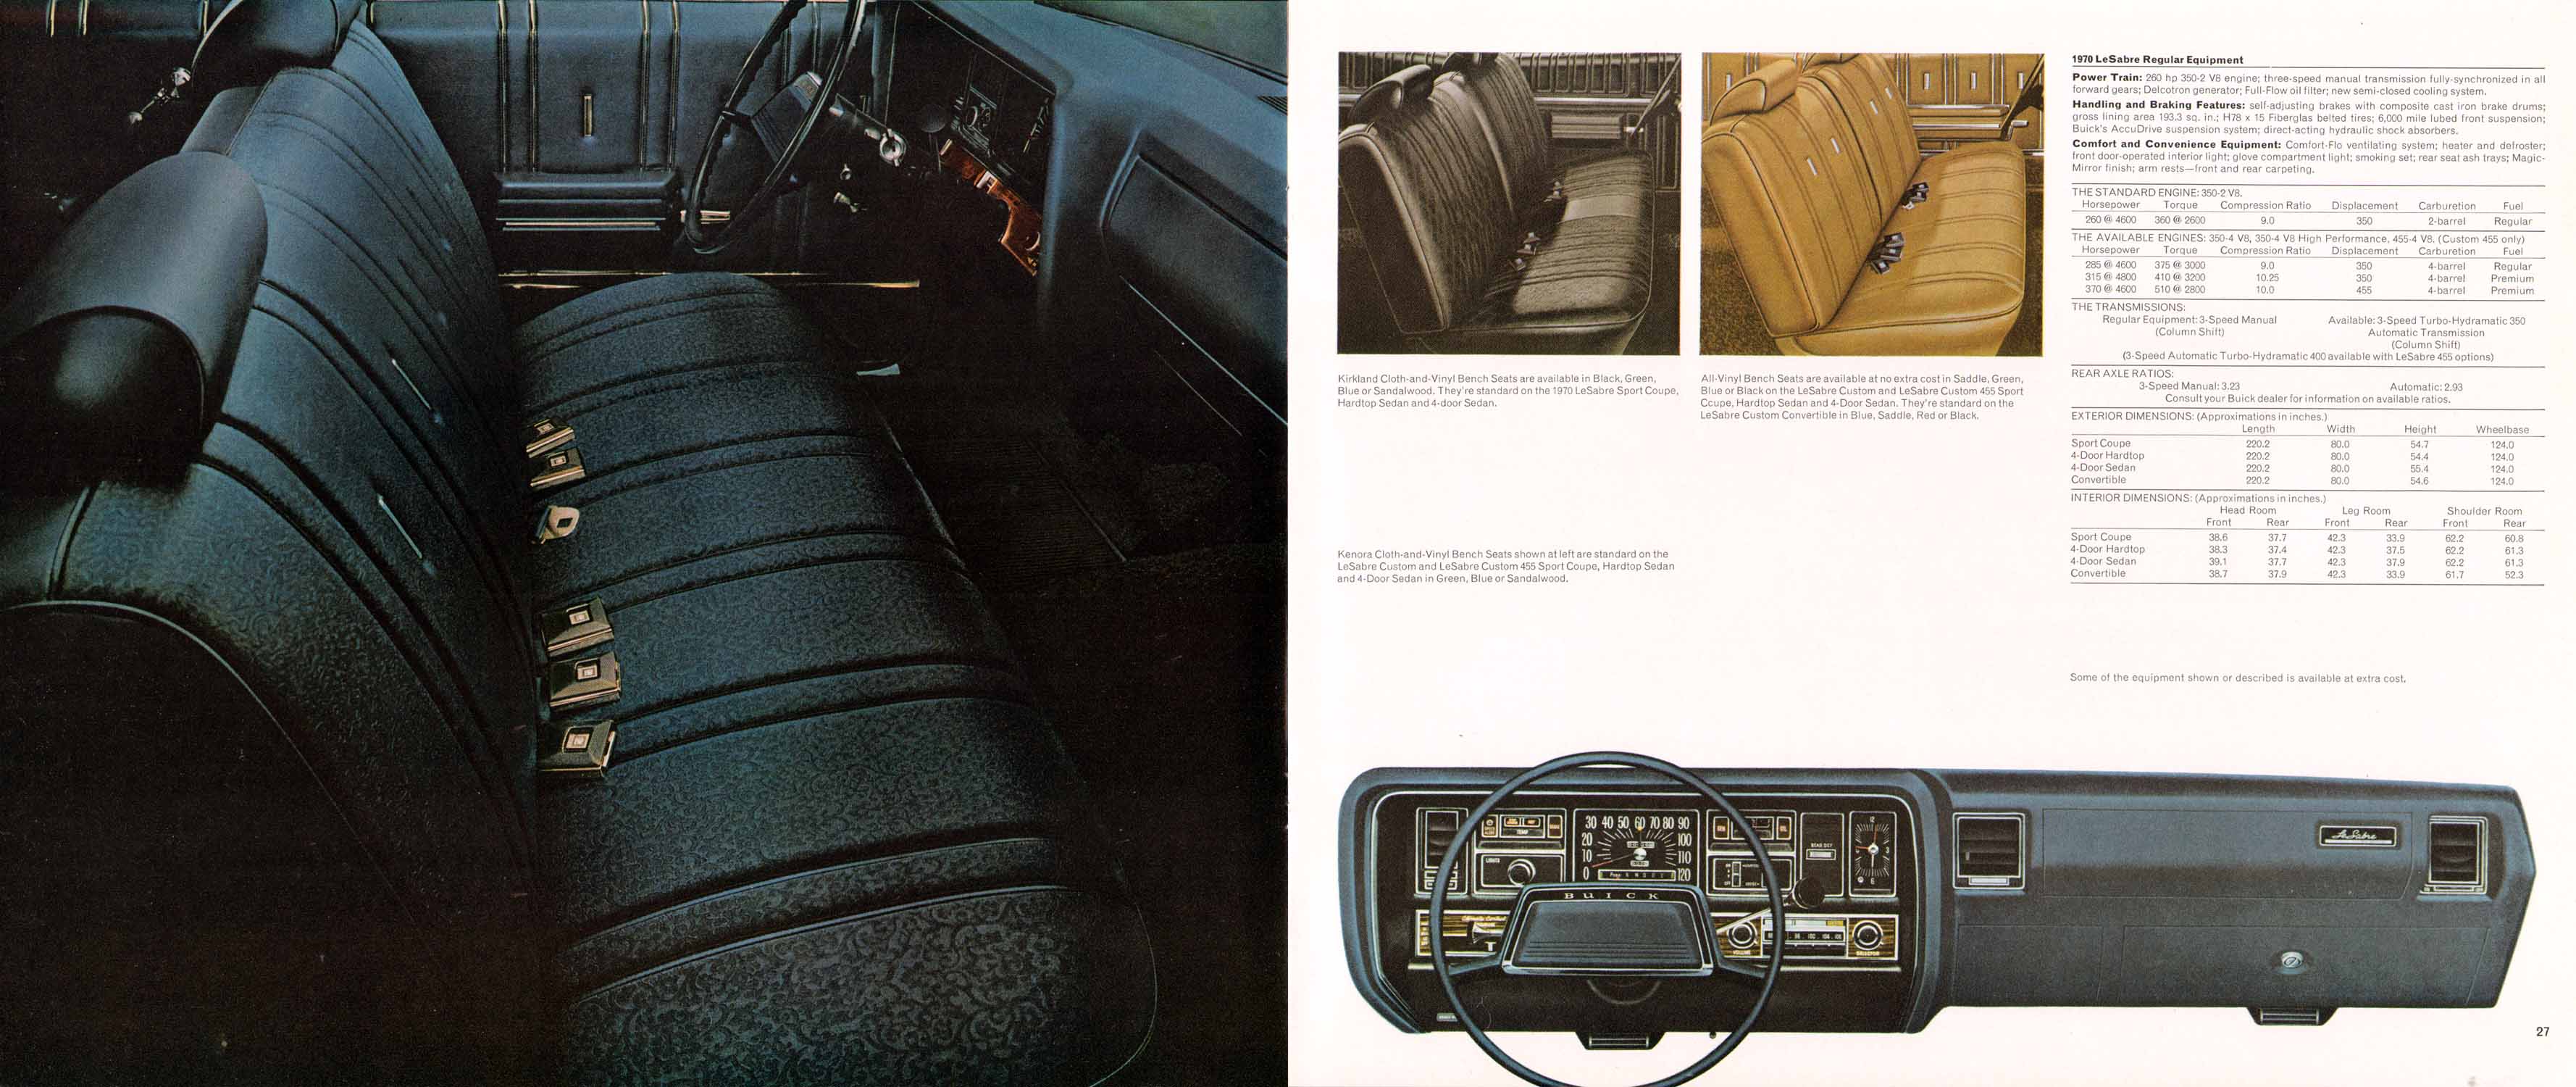 1970 Buick Full Line-26-27